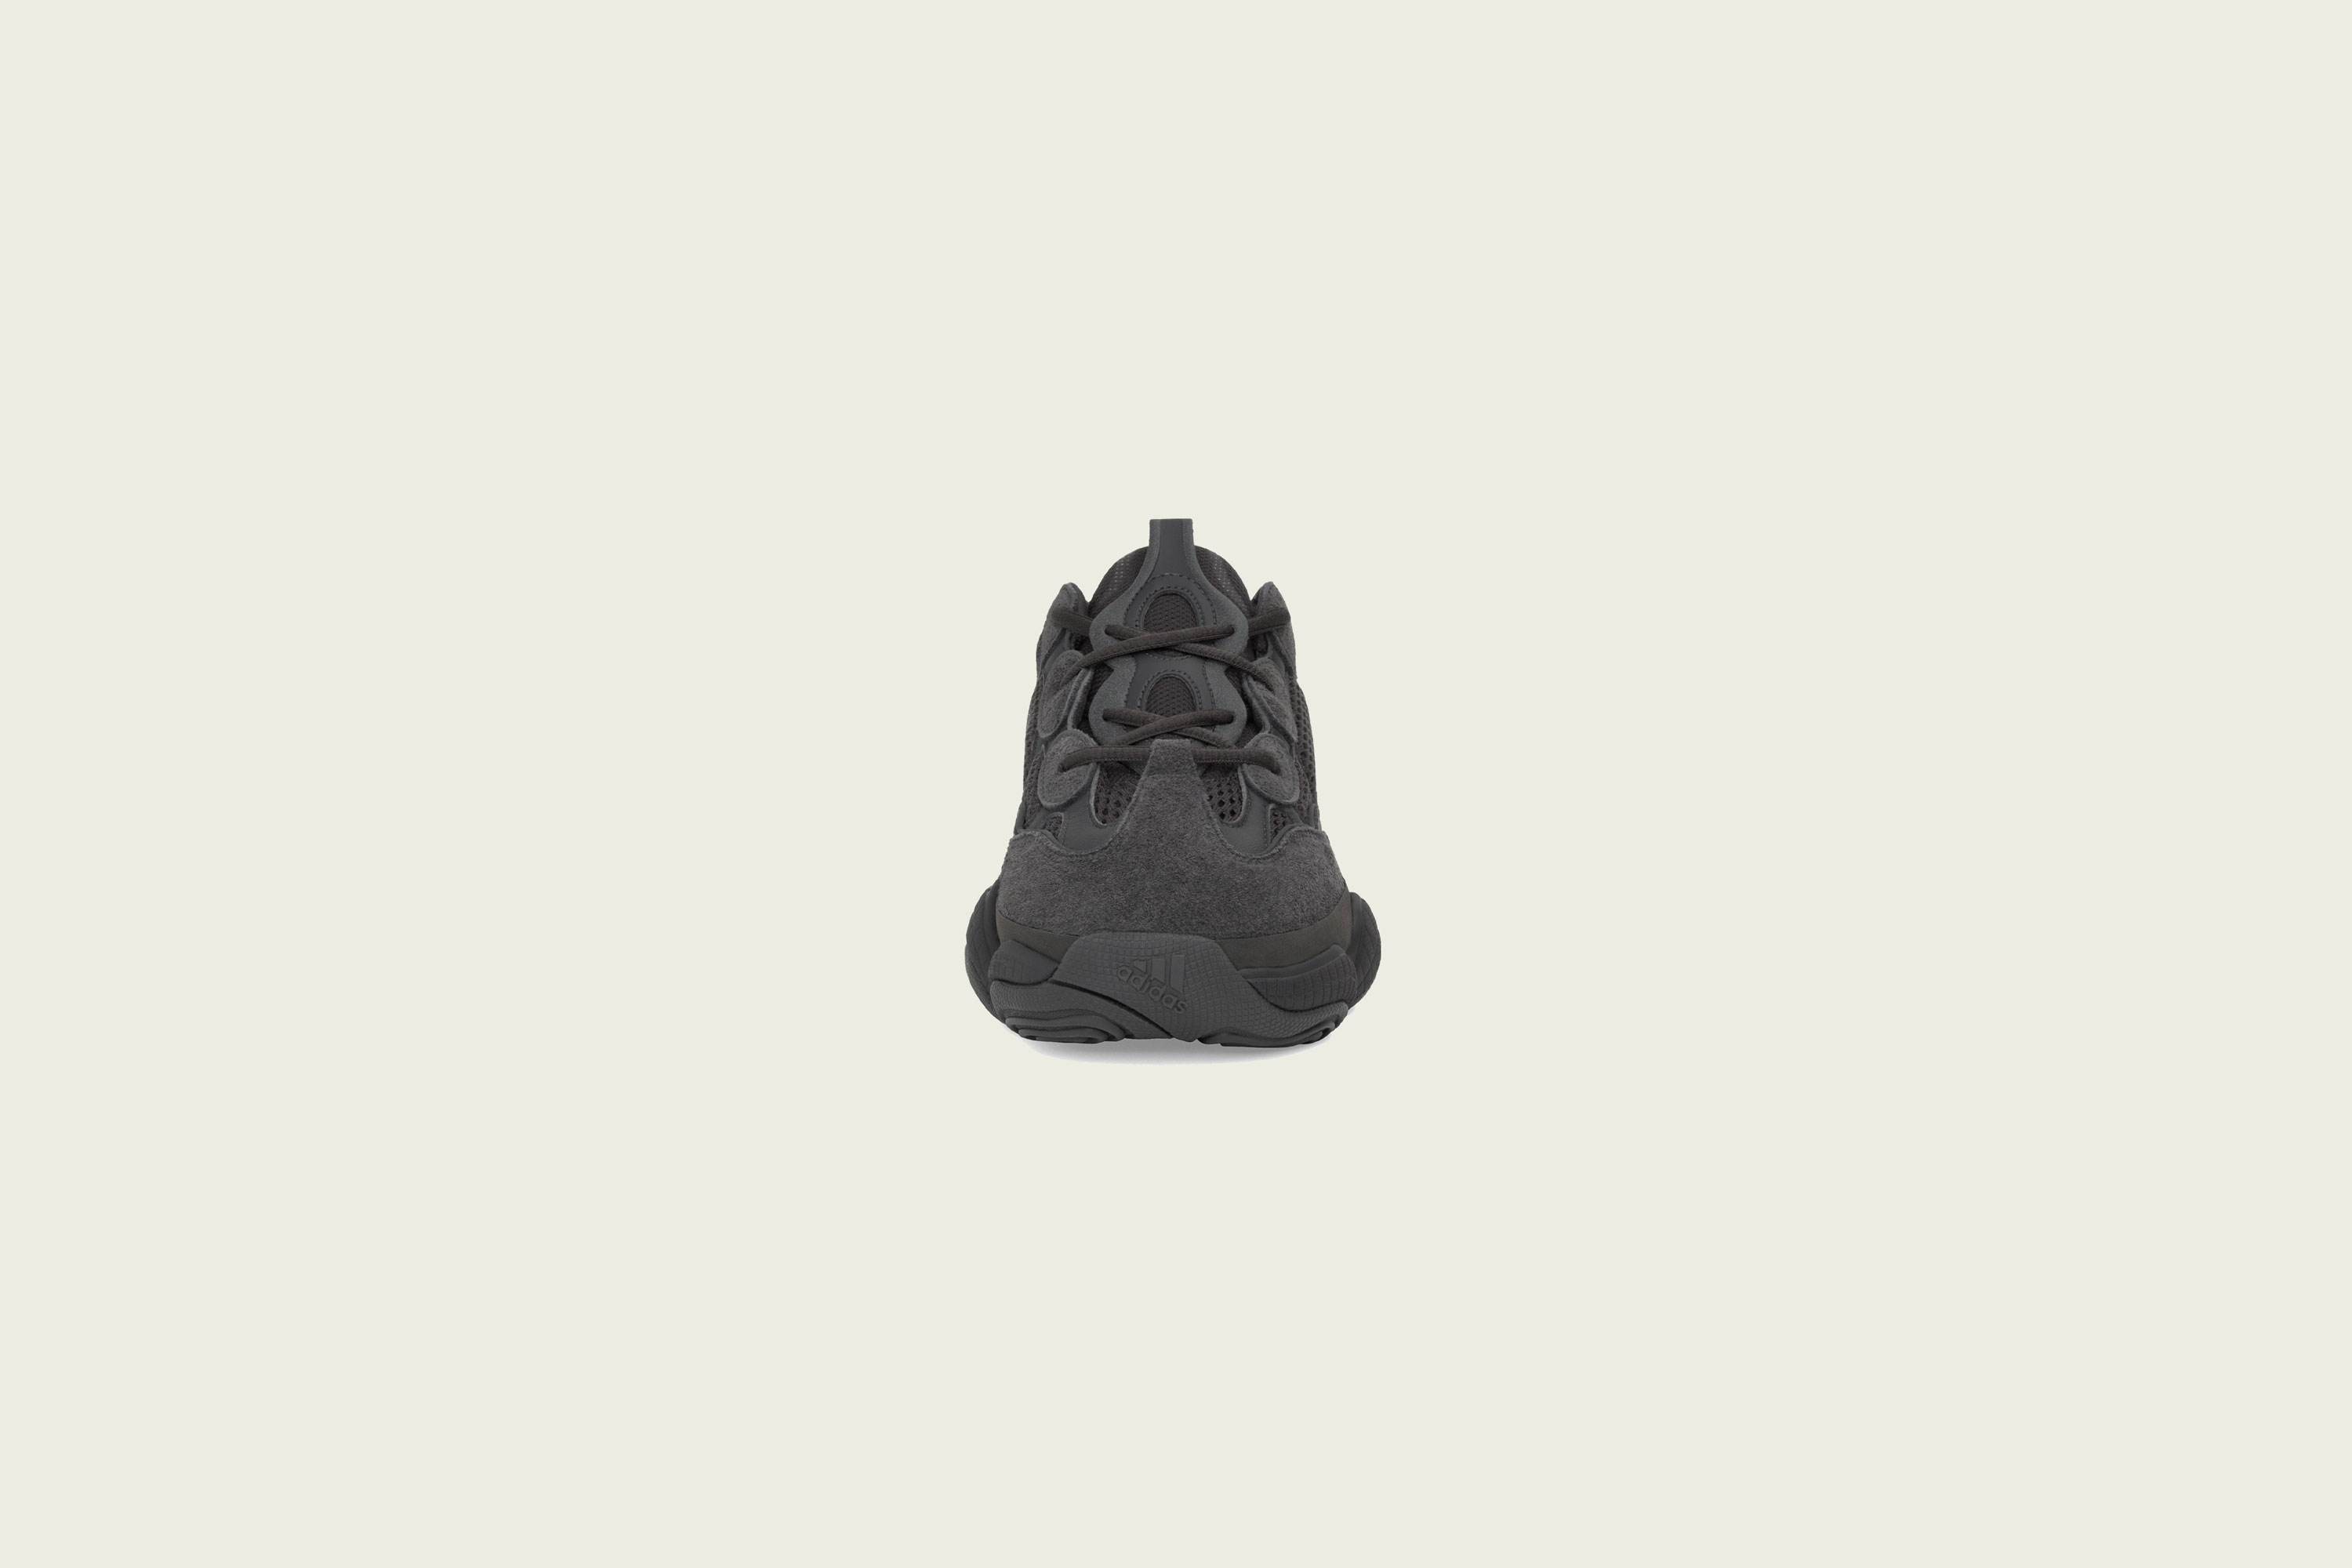 adidas - Yeezy 500 - Utlity Black - Up There